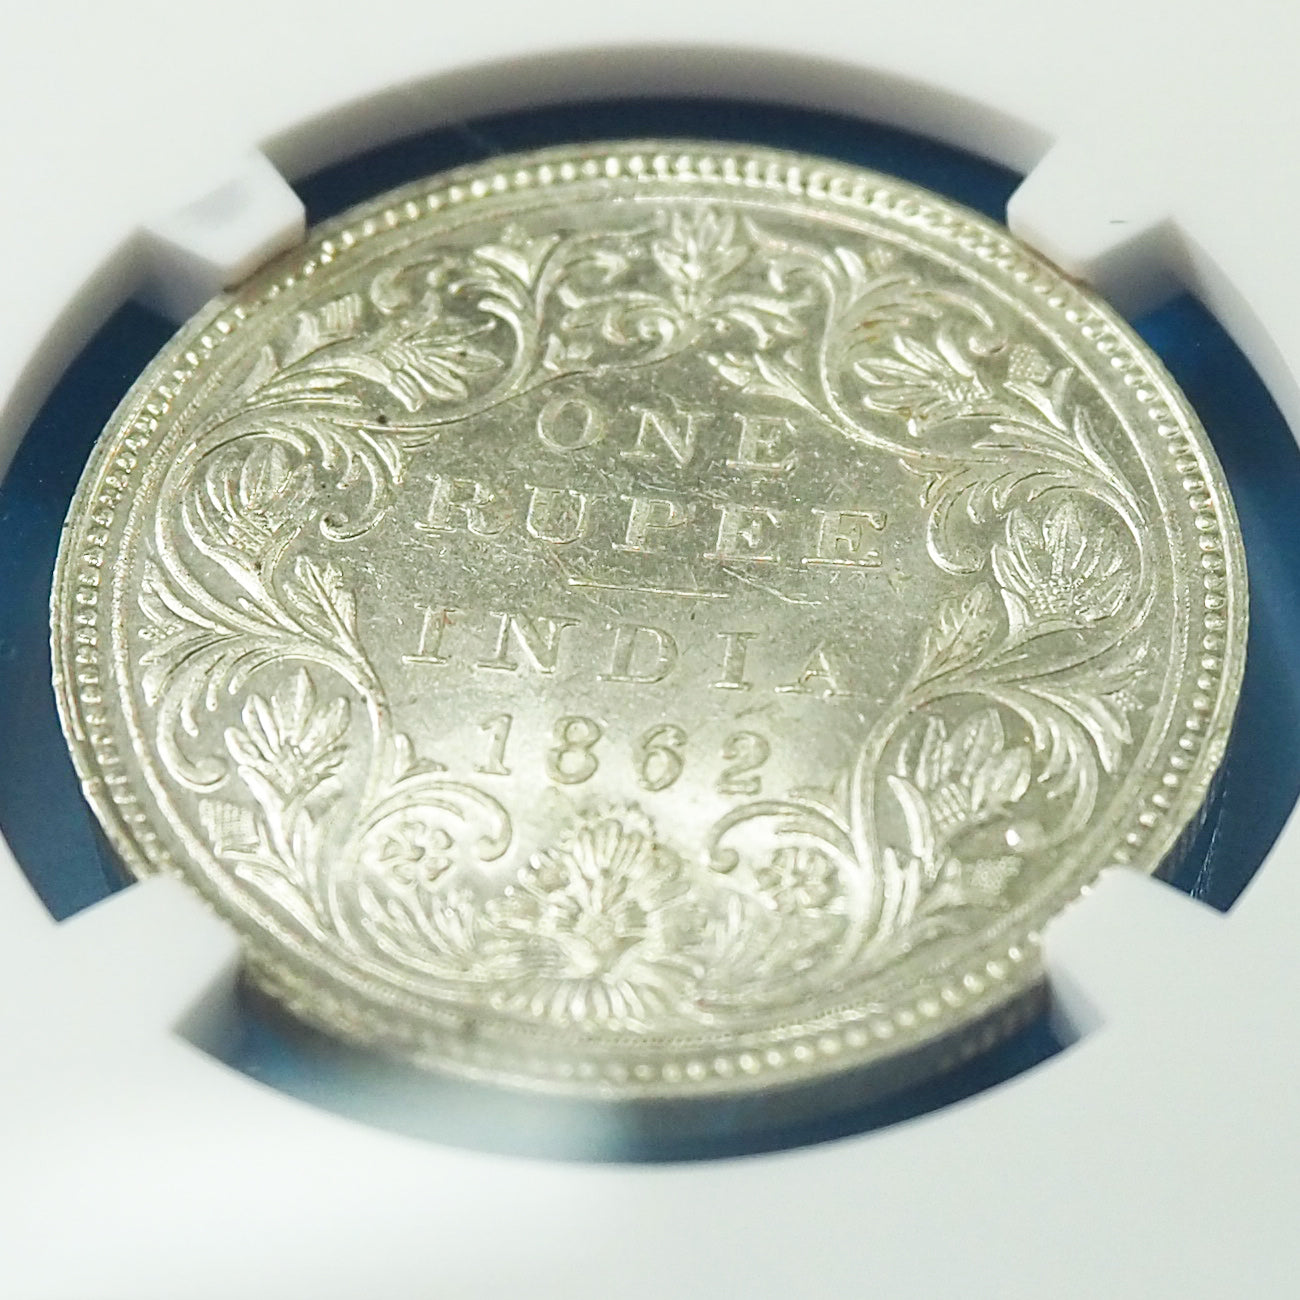 【星10個のレアタイプ】イギリス領インド ルピー銀貨 ヴィクトリア 1862(B) MS62